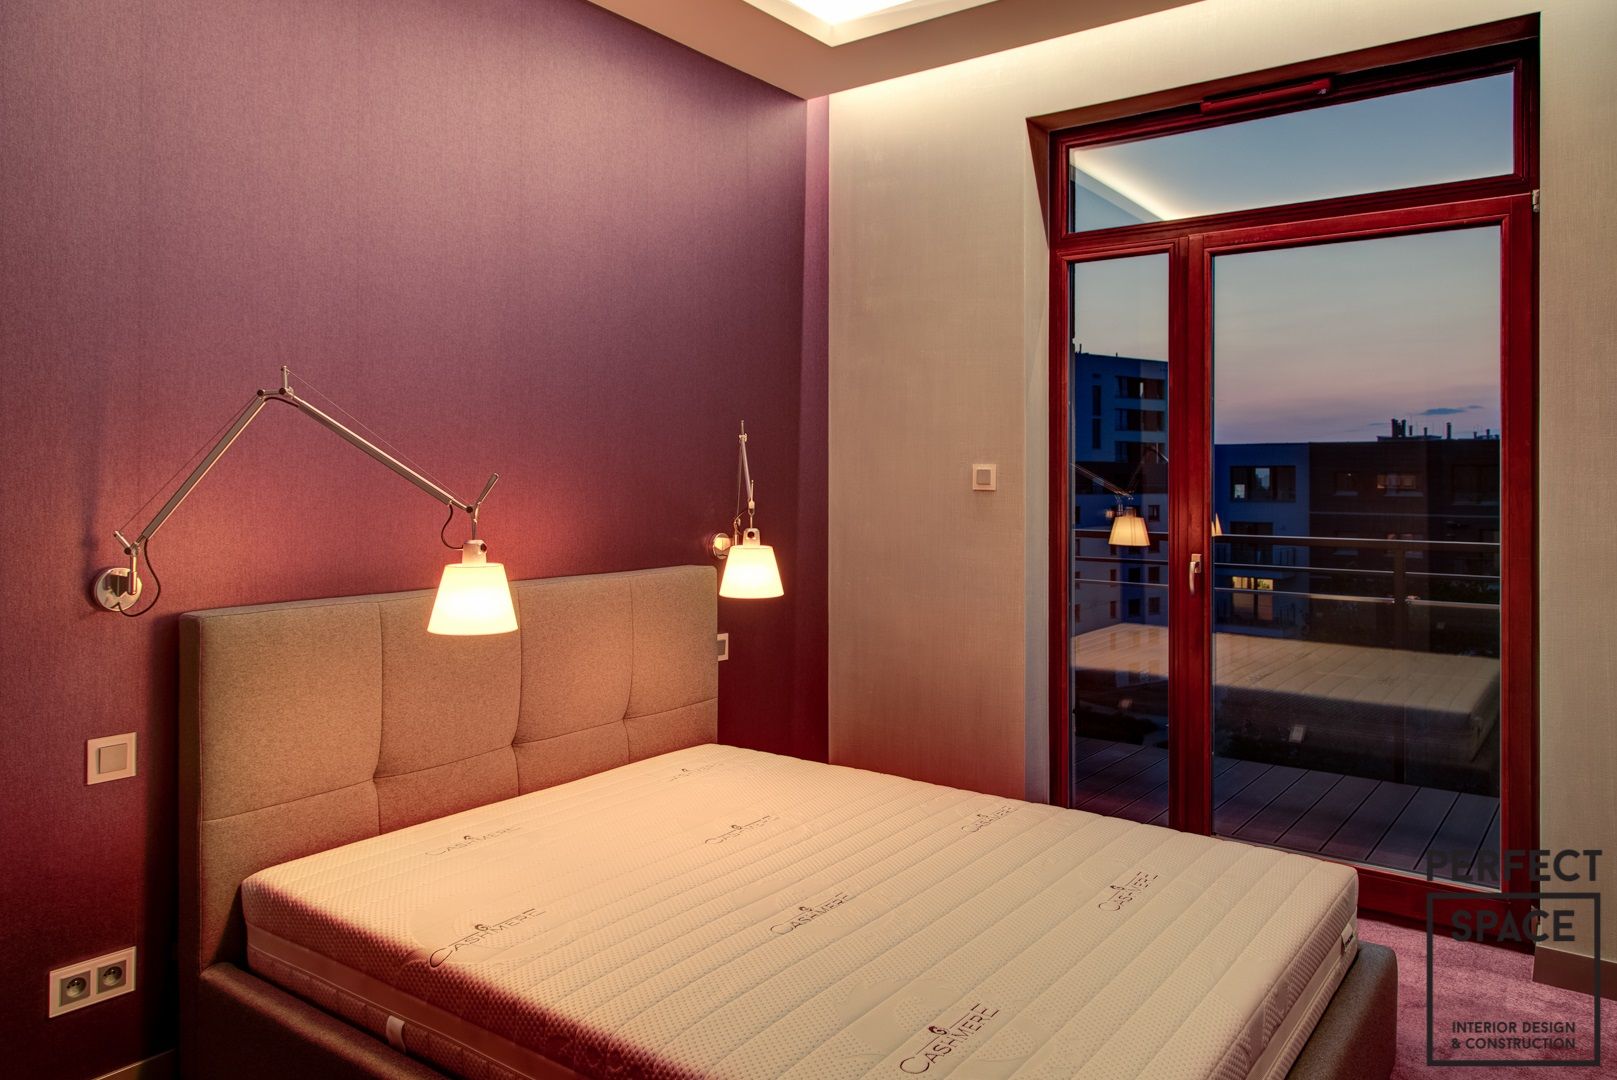 130 m Klasy i Elegancji, Perfect Space Perfect Space Dormitorios de estilo moderno